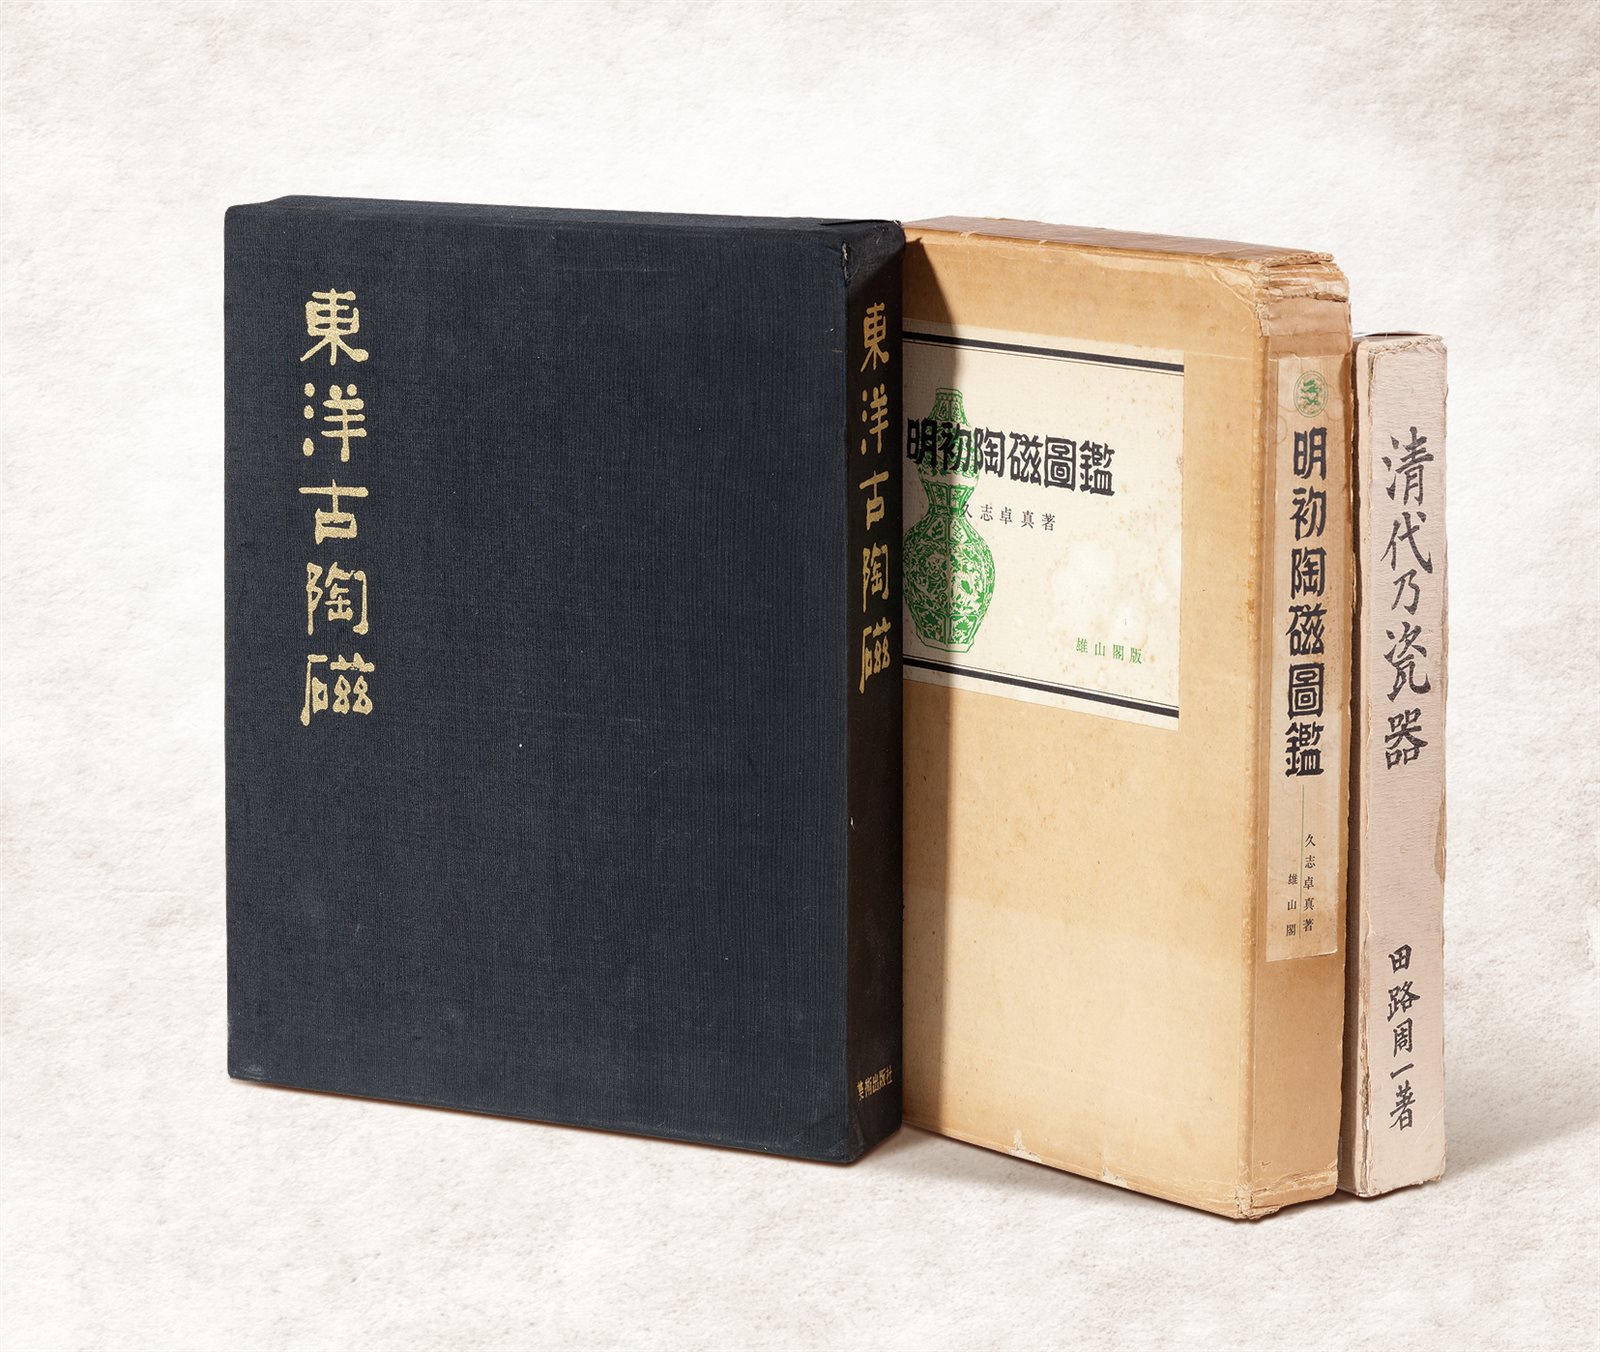  1961-1976年日本学者研究中国陶瓷文献三册